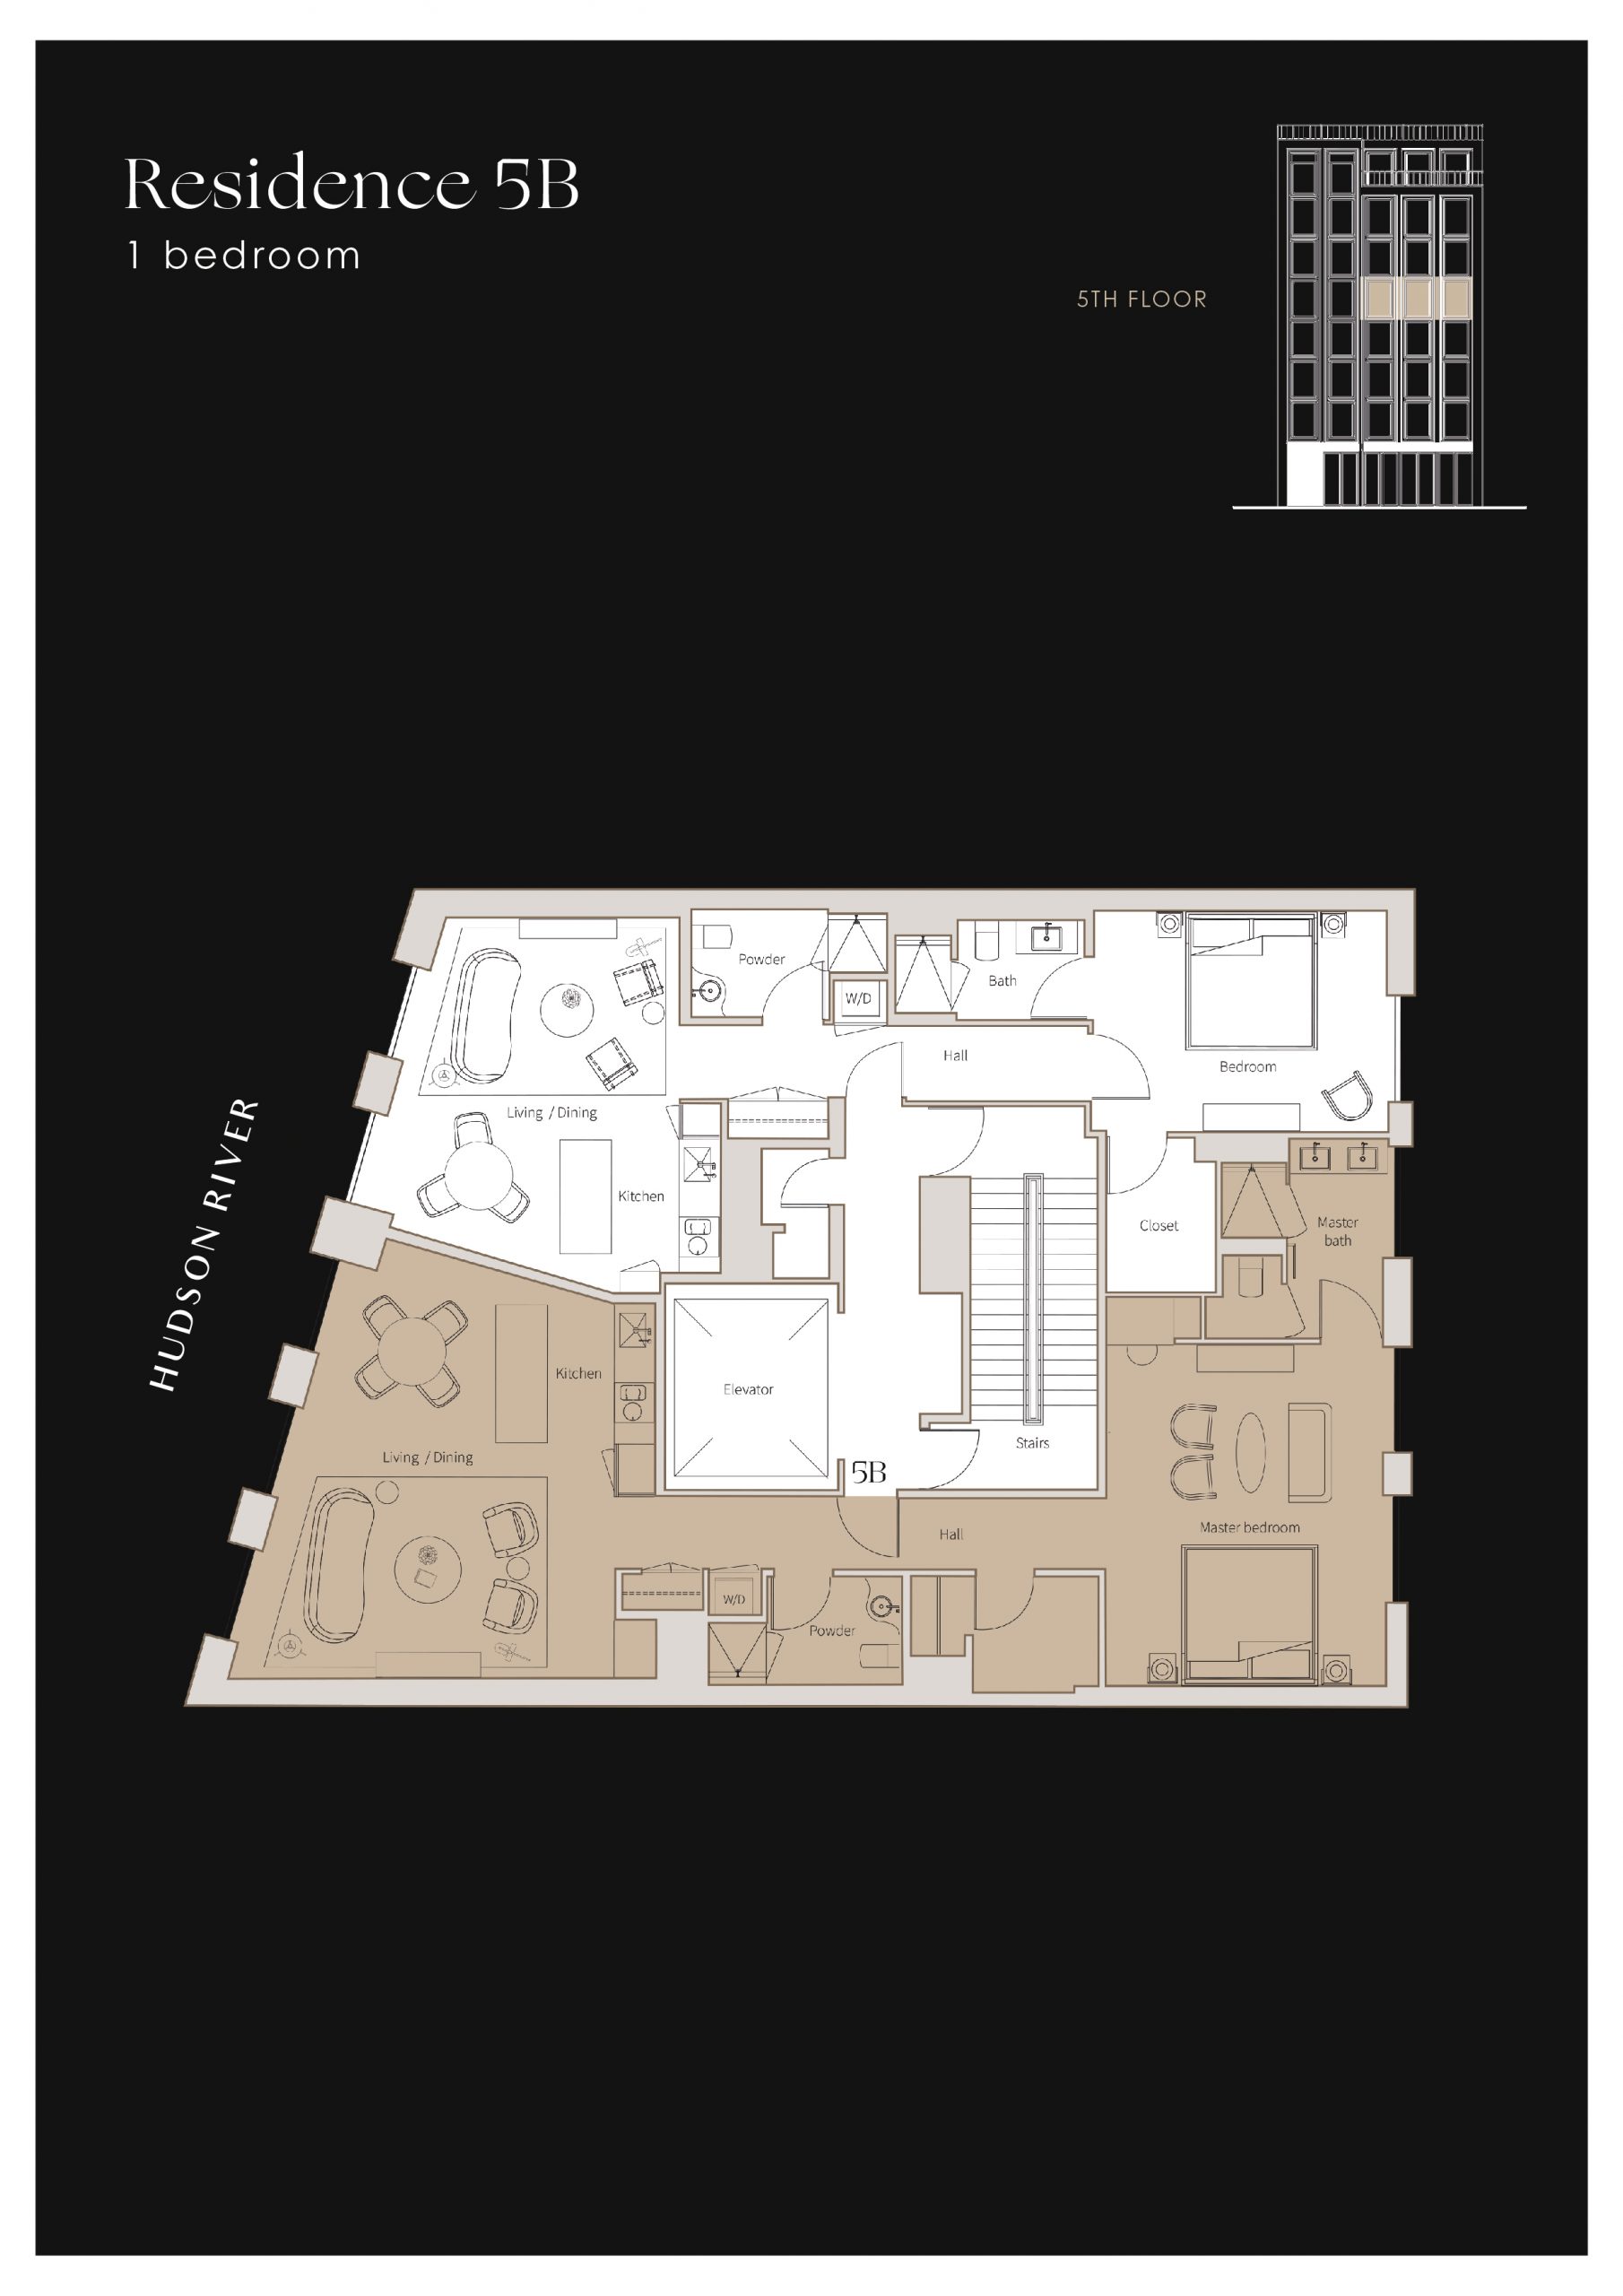 Plan of apartment Residence 5B